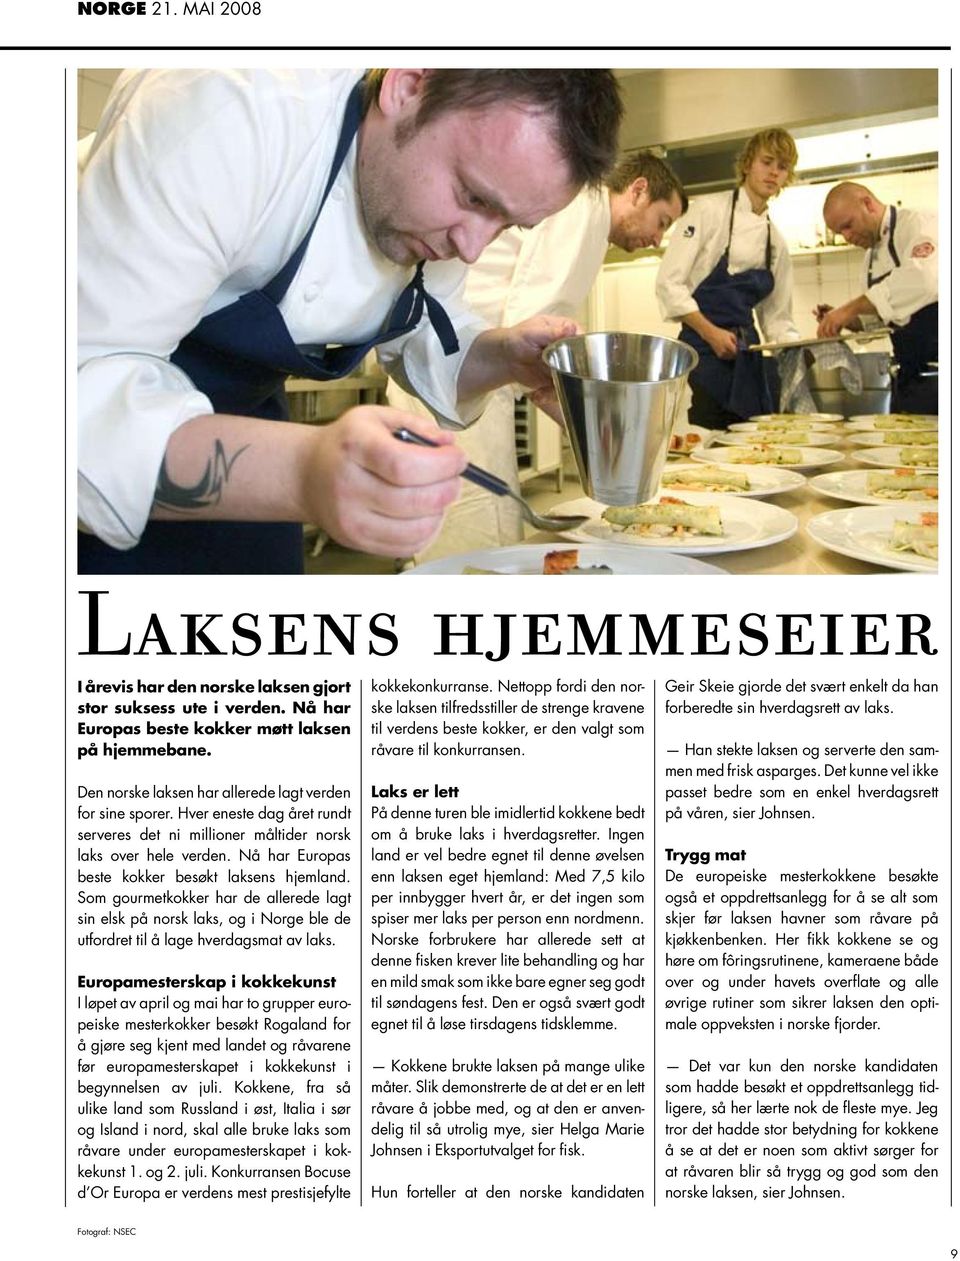 Nå har Europas beste kokker besøkt laksens hjemland. Som gourmetkokker har de allerede lagt sin elsk på norsk laks, og i Norge ble de utfordret til å lage hverdagsmat av laks.